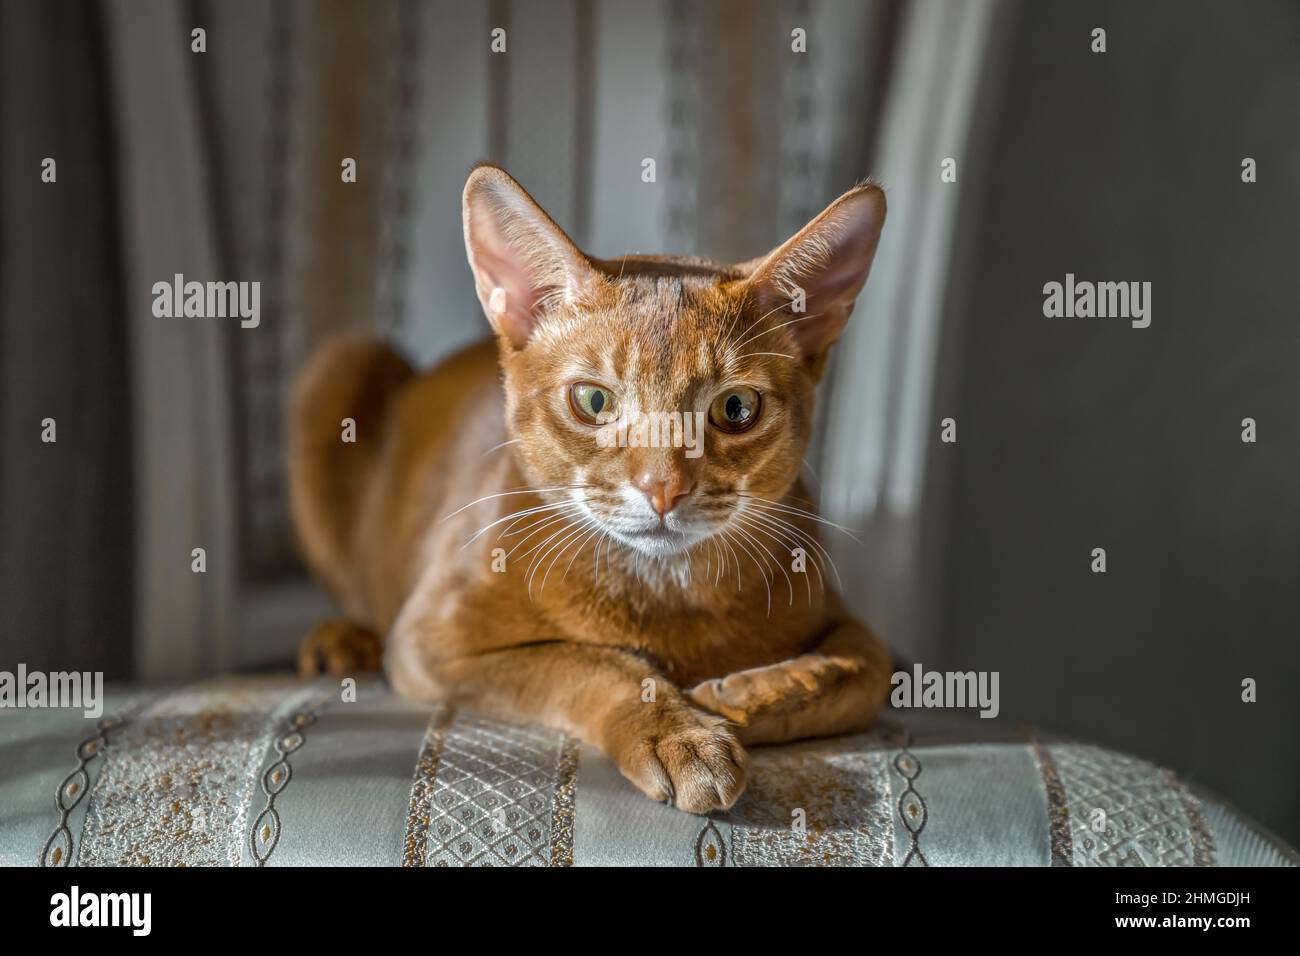 Le chat rouge de la race abyssinienne repose sur une chaise dans la pose de sphinx, regarde la caméra, . Caloose-up. Banque D'Images